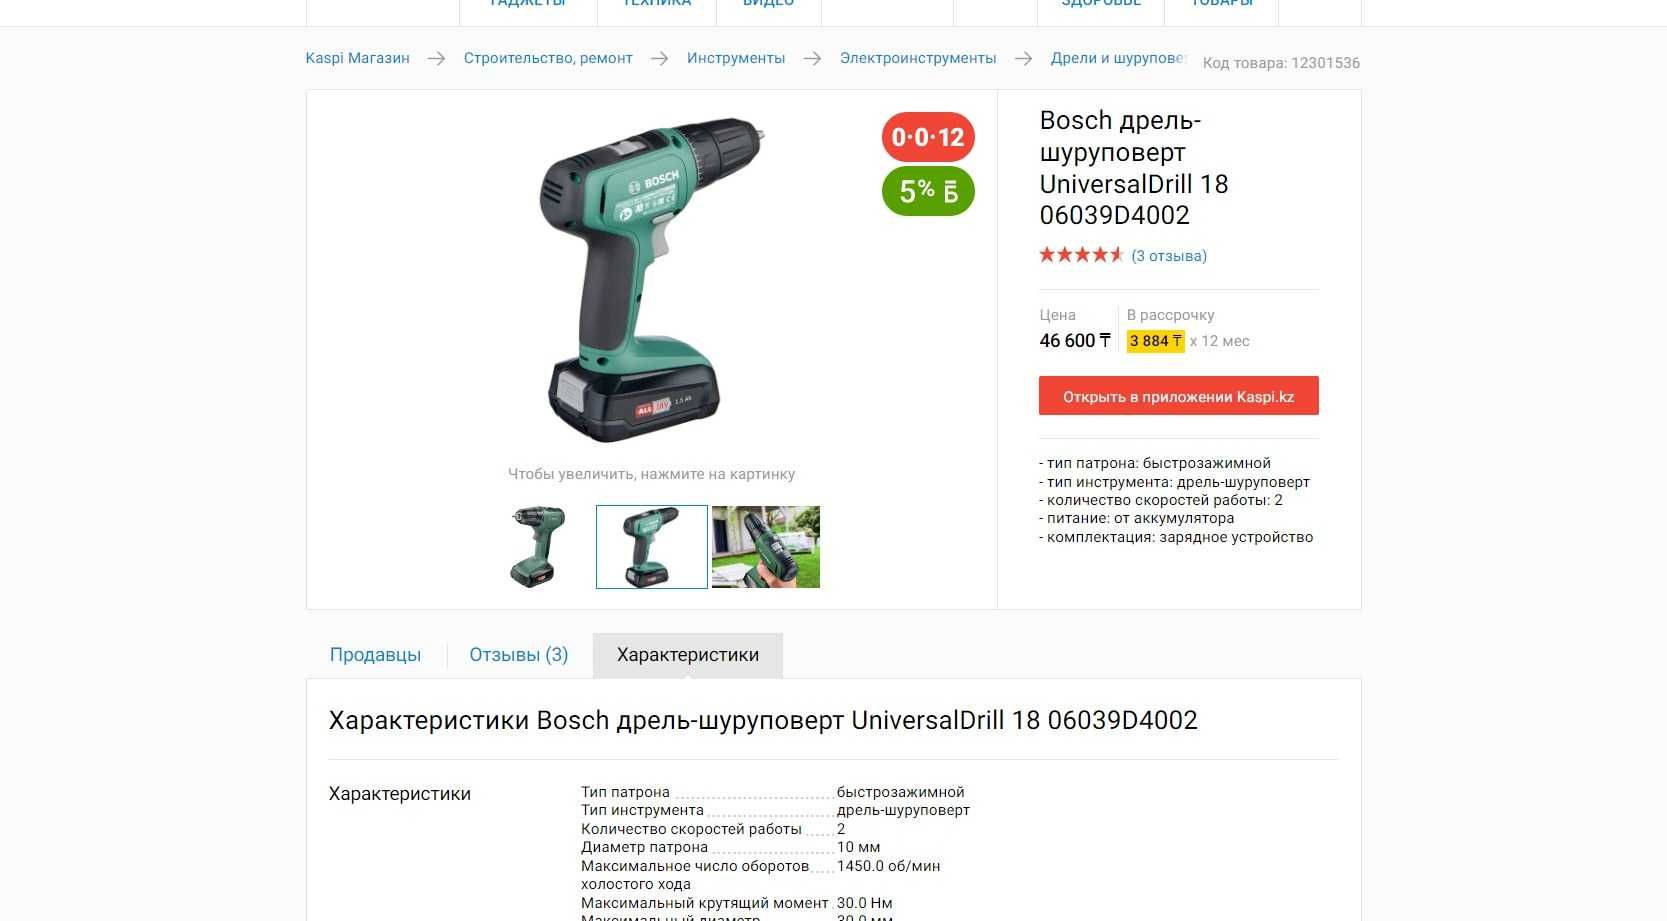 Bosch дрель-шуруповерт UniversalDrill 18 НОВЫЙ версия 1 акб и 2 акб